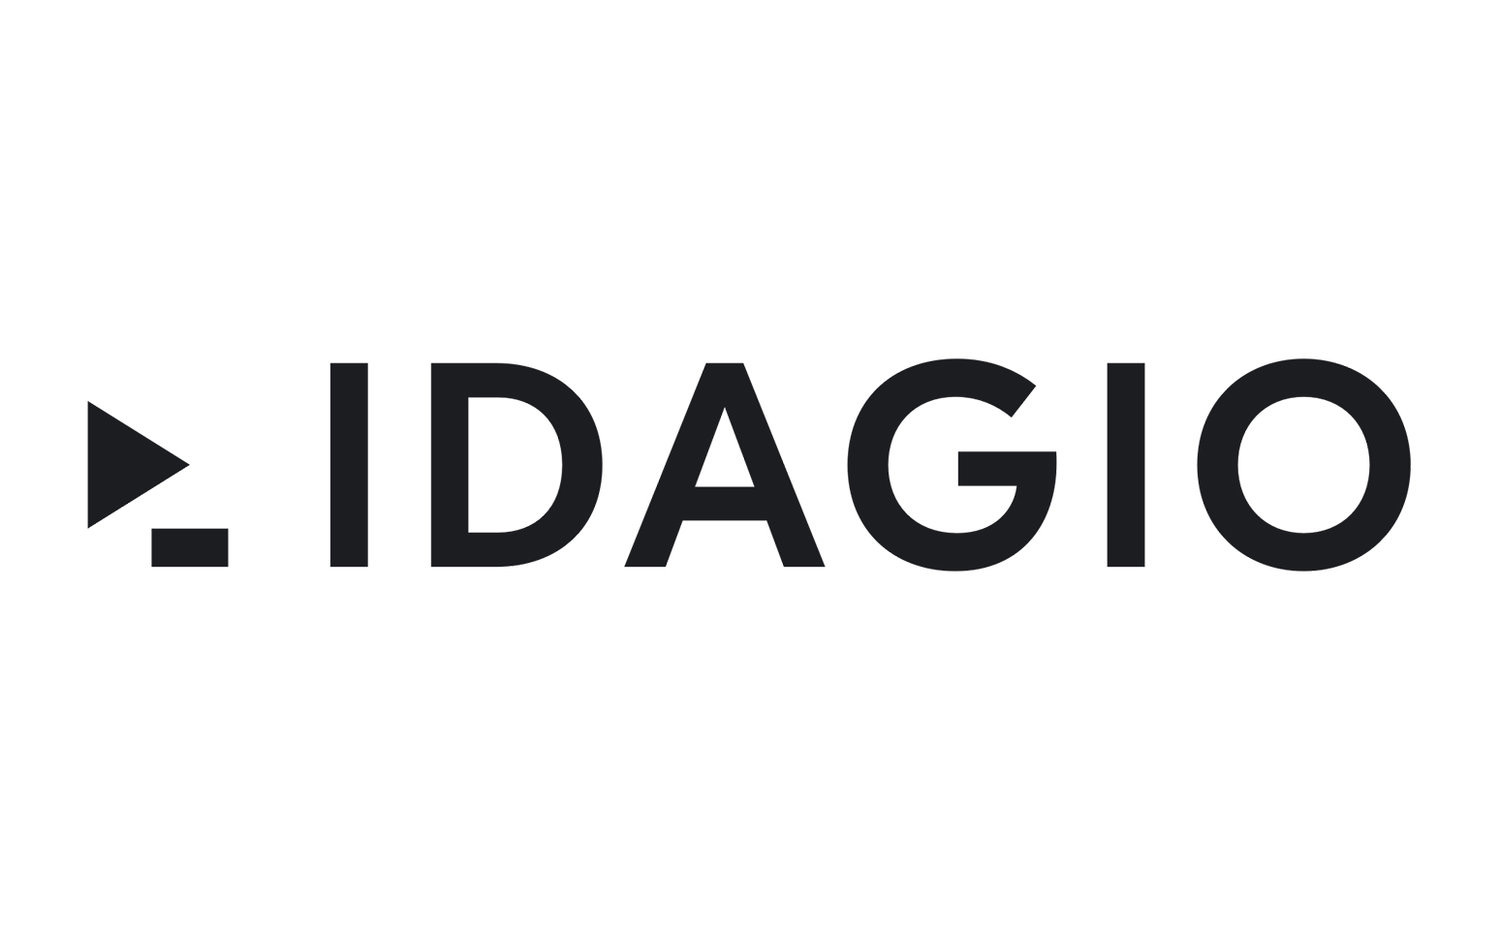 IDAGIO dịch vụ stream nhạc cổ điển của Đức ra mắt gói cước miễn phí, stream nhạc MP3 192kbps